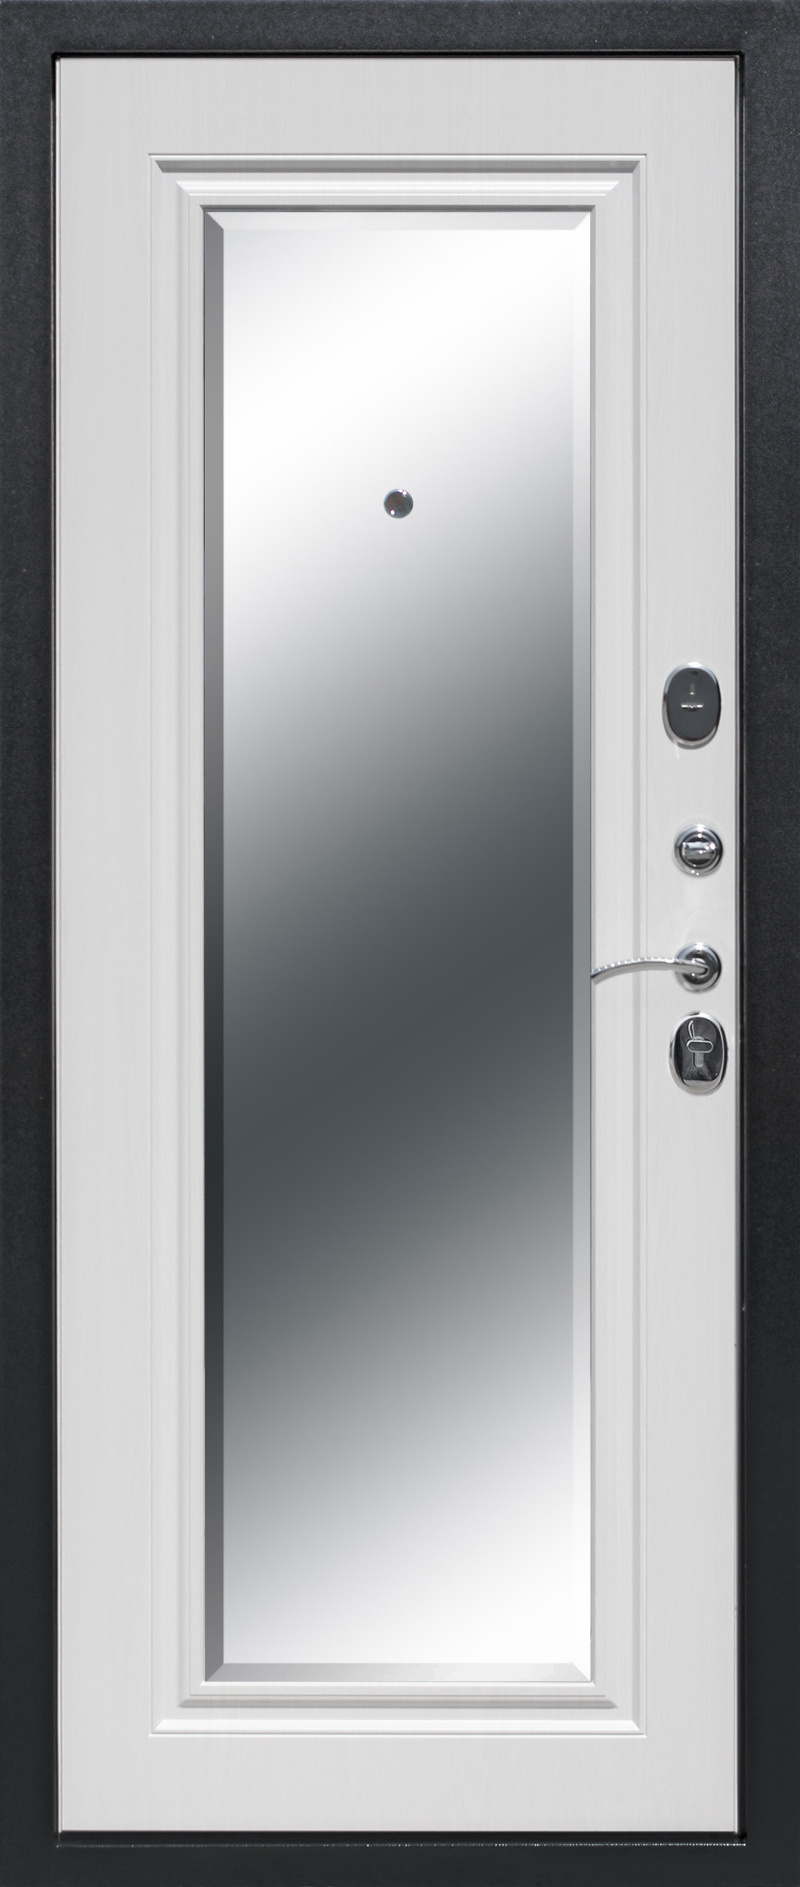 Феррони Входная дверь 7,5 см Гарда серебро зеркало фацет, арт. 0001343 - фото №1